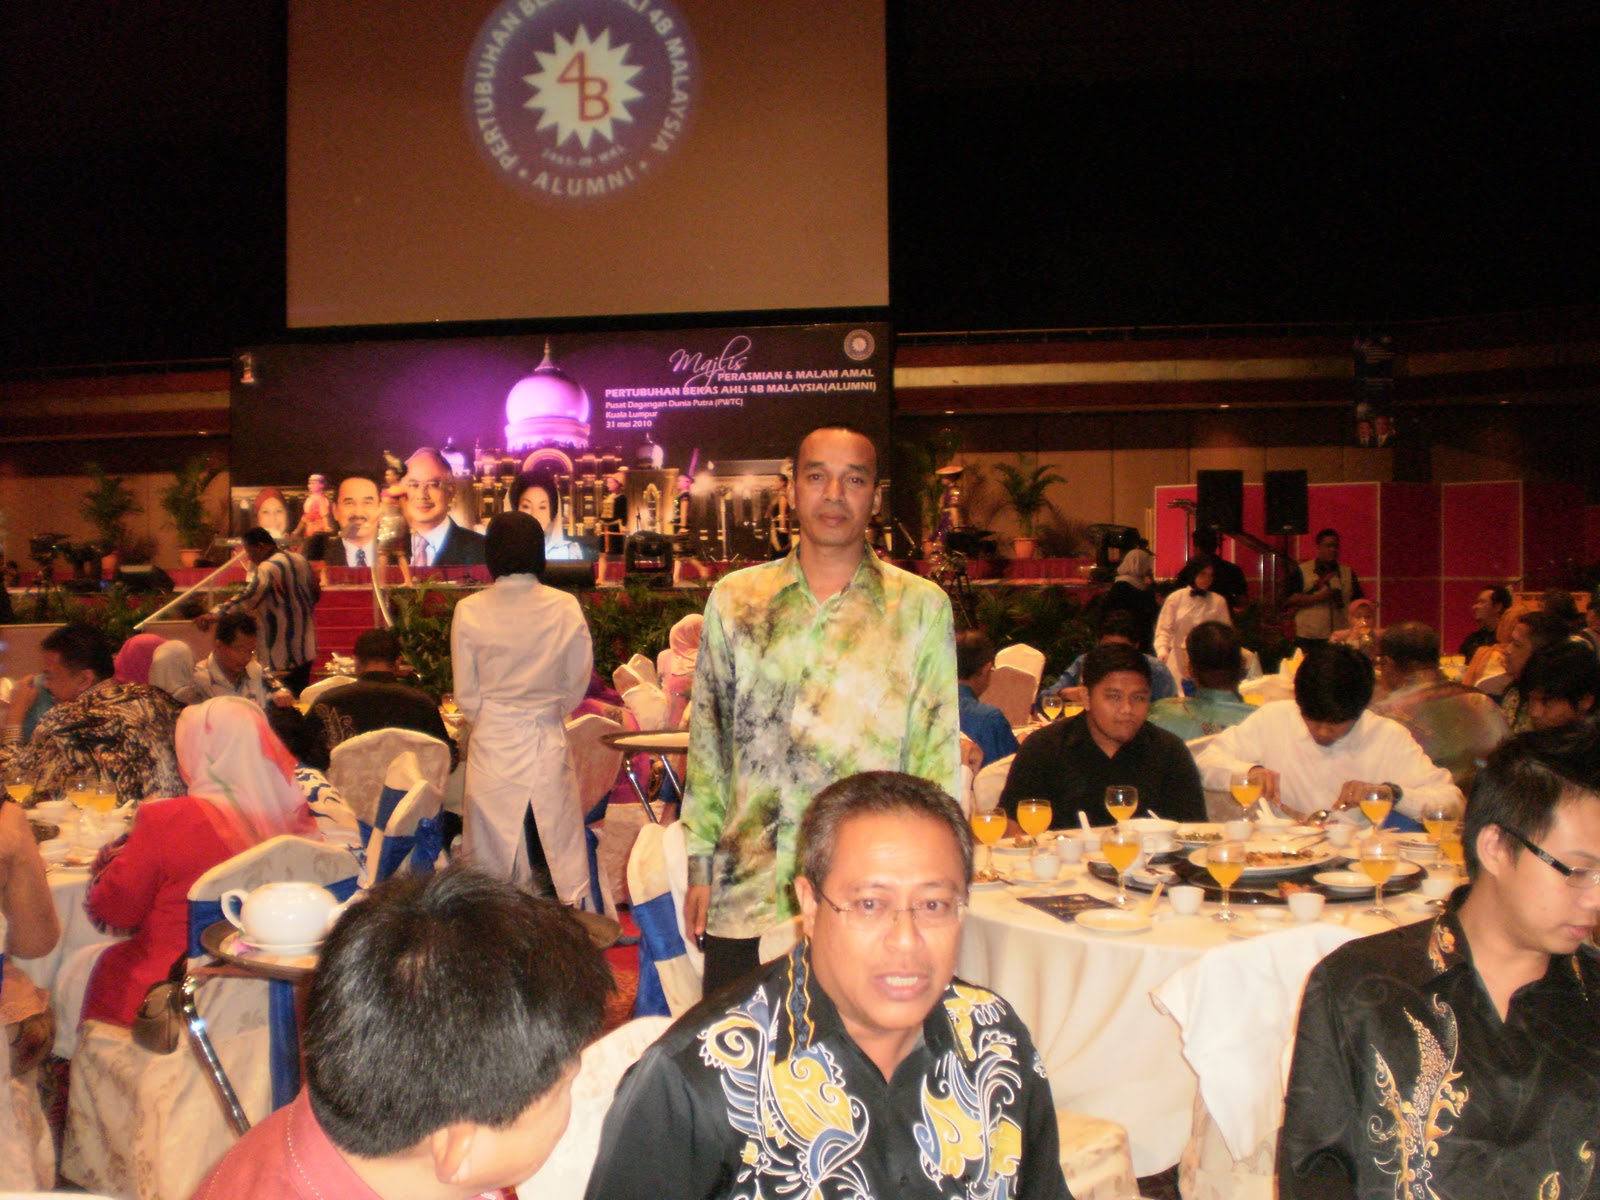 Gerak Perkasa: Majlis Pelancaran Alumni 4B MalaysiaPWTC 